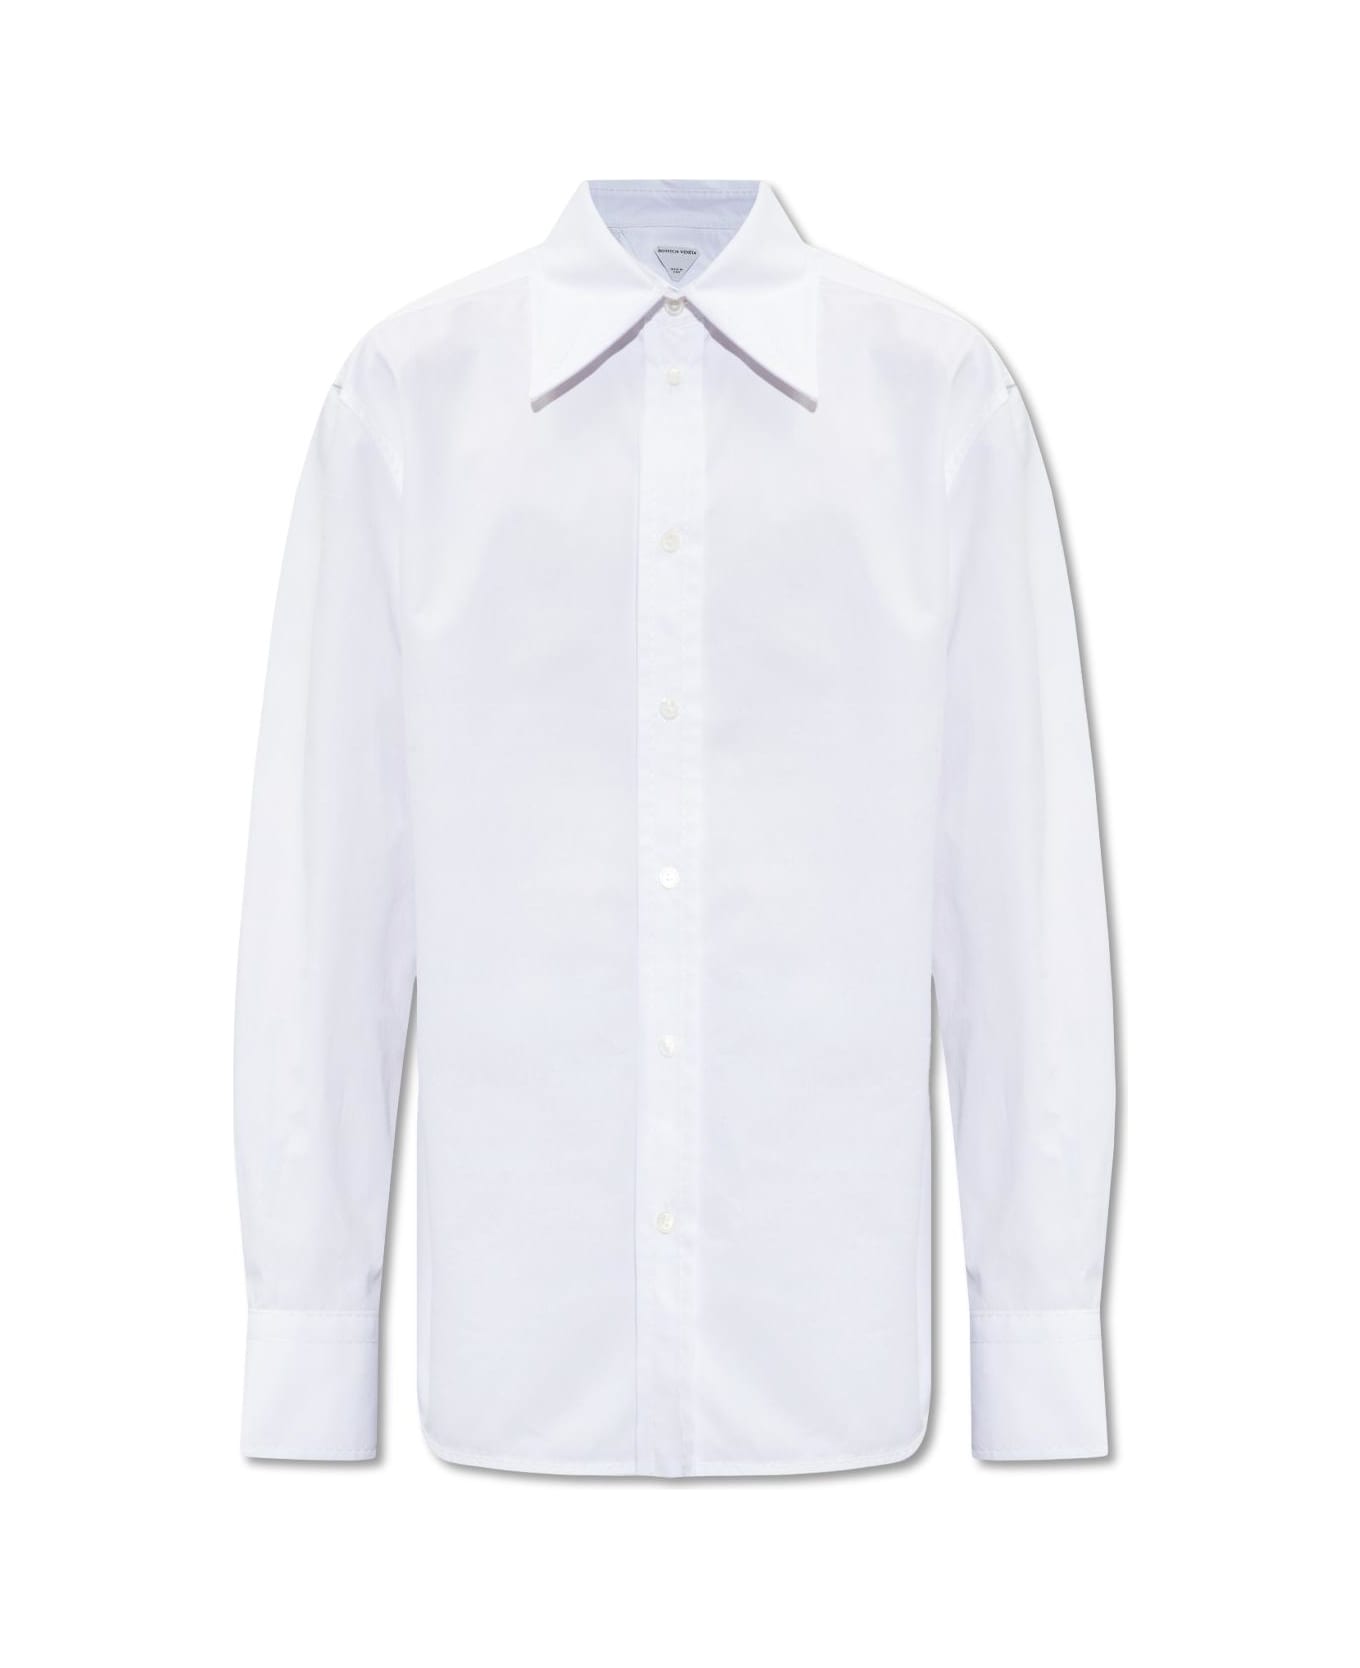 Bottega Veneta Shirt With Stitching - WHITE シャツ